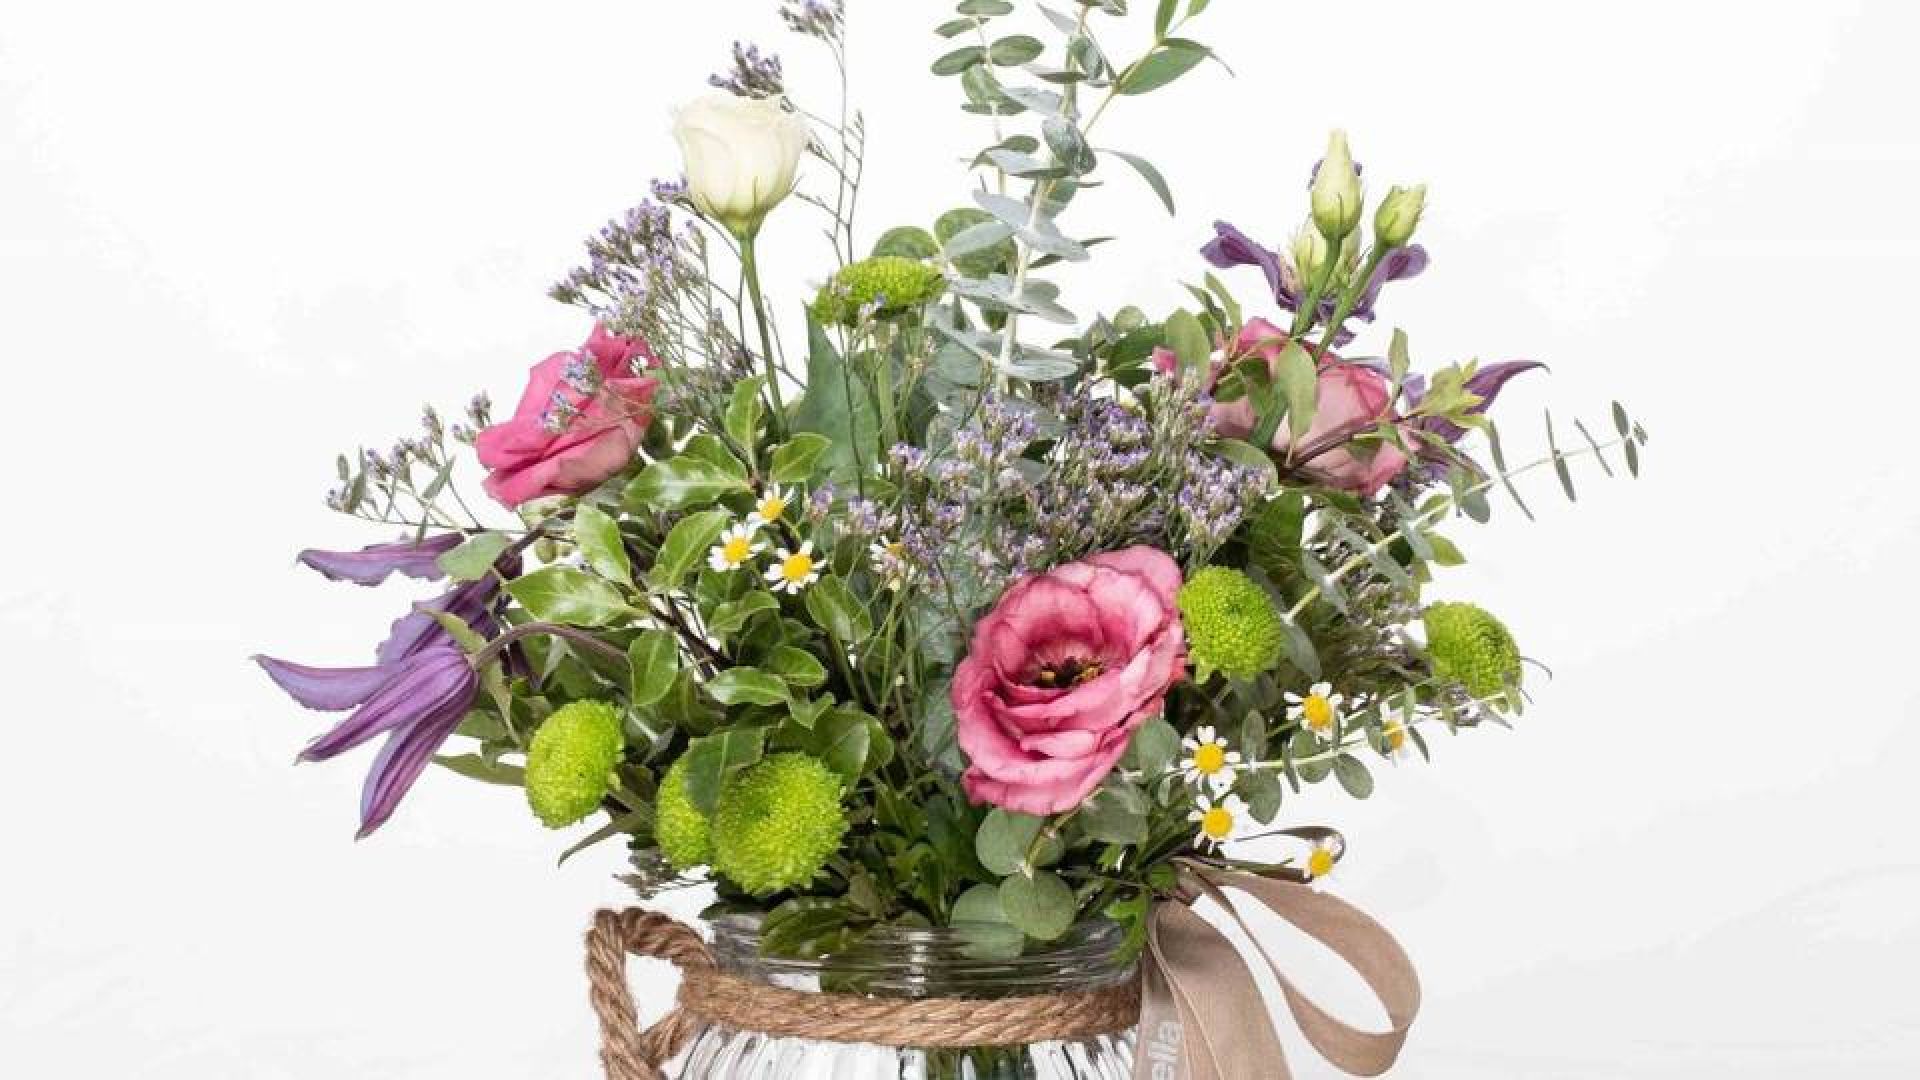 Envía flores a domicilio el día de la madre - ▷Floristería Madrid-Flores a domicilio Madrid▷Floristería Amborella